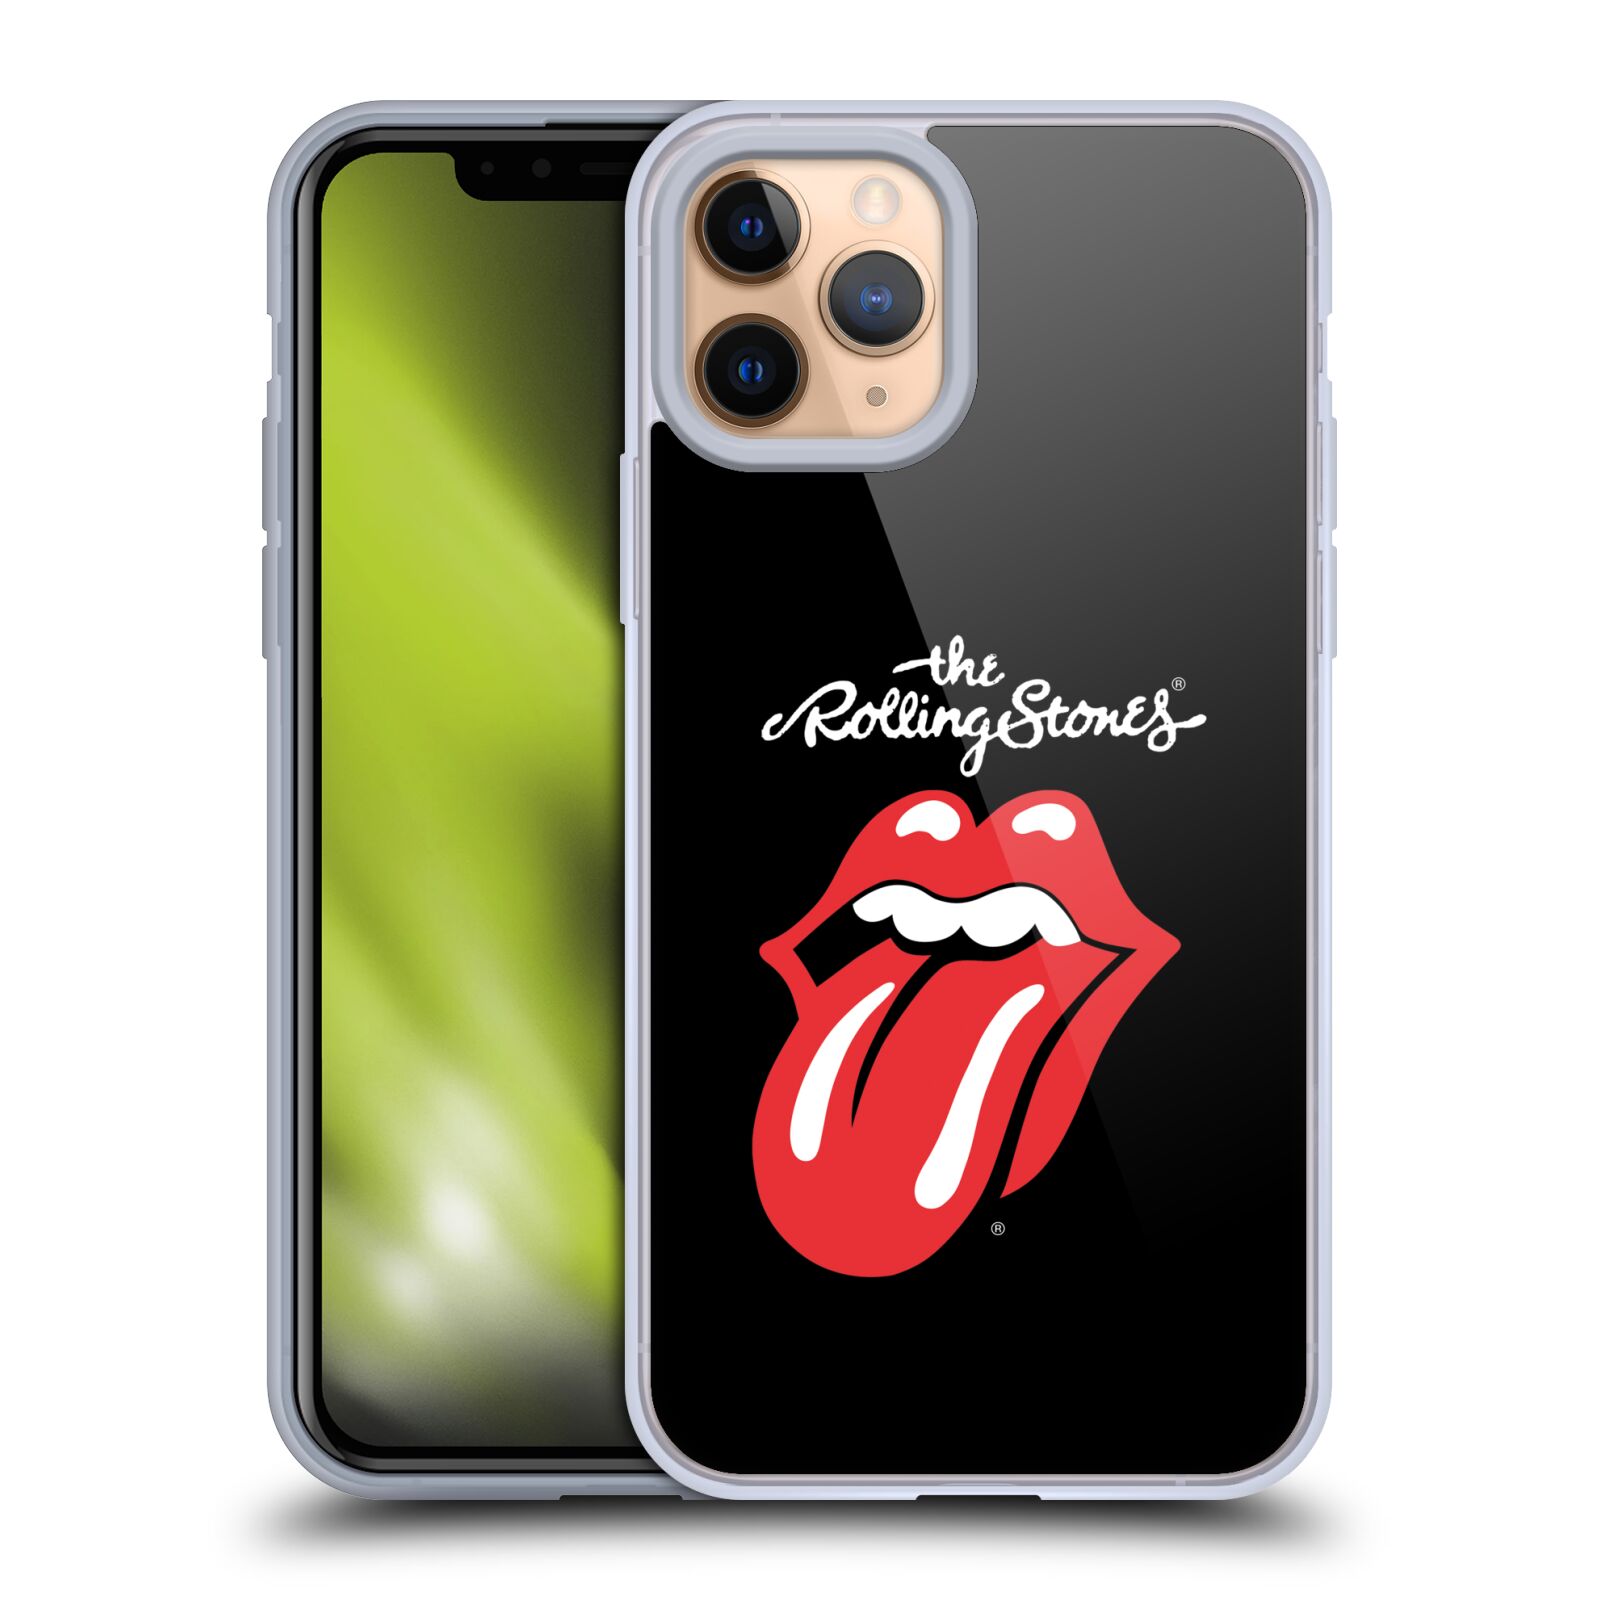 Silikonové pouzdro na mobil Apple iPhone 11 Pro - Head Case - The Rolling Stones - Classic Lick (Silikonový kryt, obal, pouzdro na mobilní telefon Apple iPhone 11 Pro s displejem 5,8" s motivem The Rolling Stones - Classic Lick)